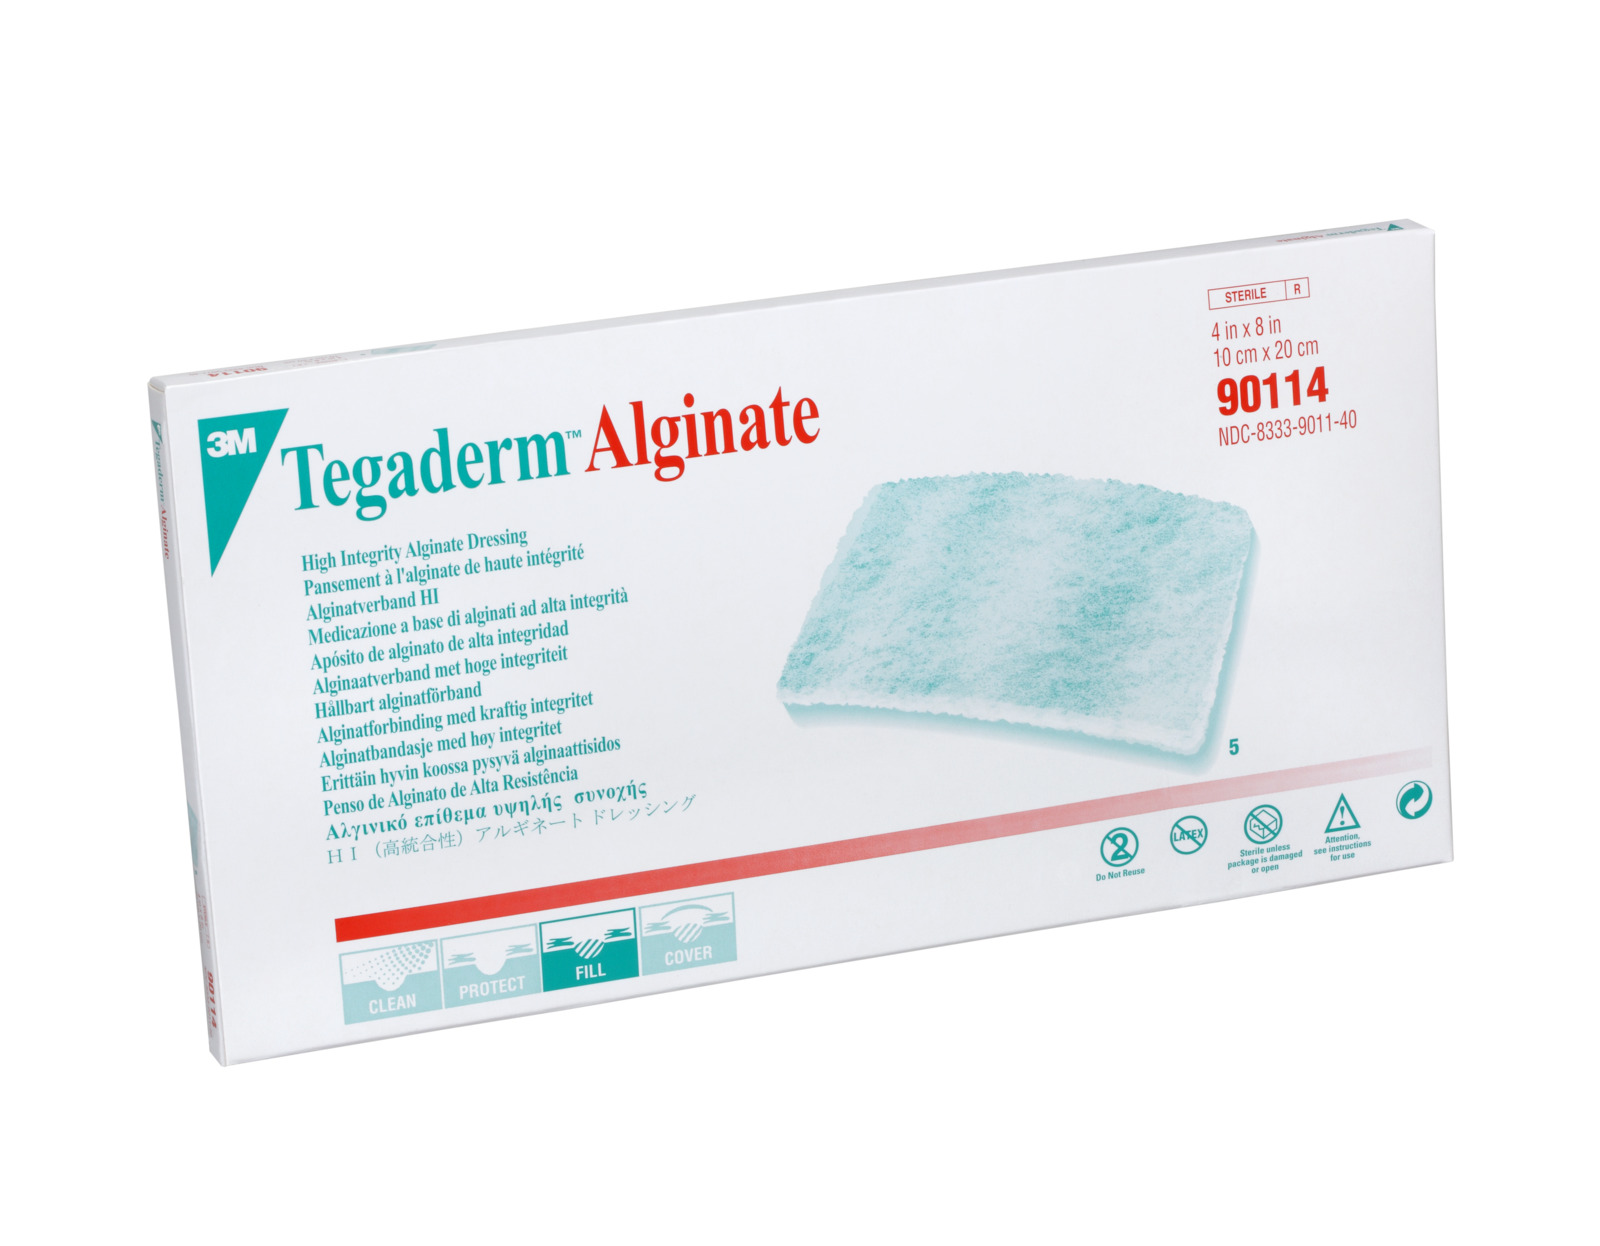 3M™ Tegaderm™ Alginate, Calcium-Alginatverband, 90114, 20 cm x 10 cm, 5 / Packung